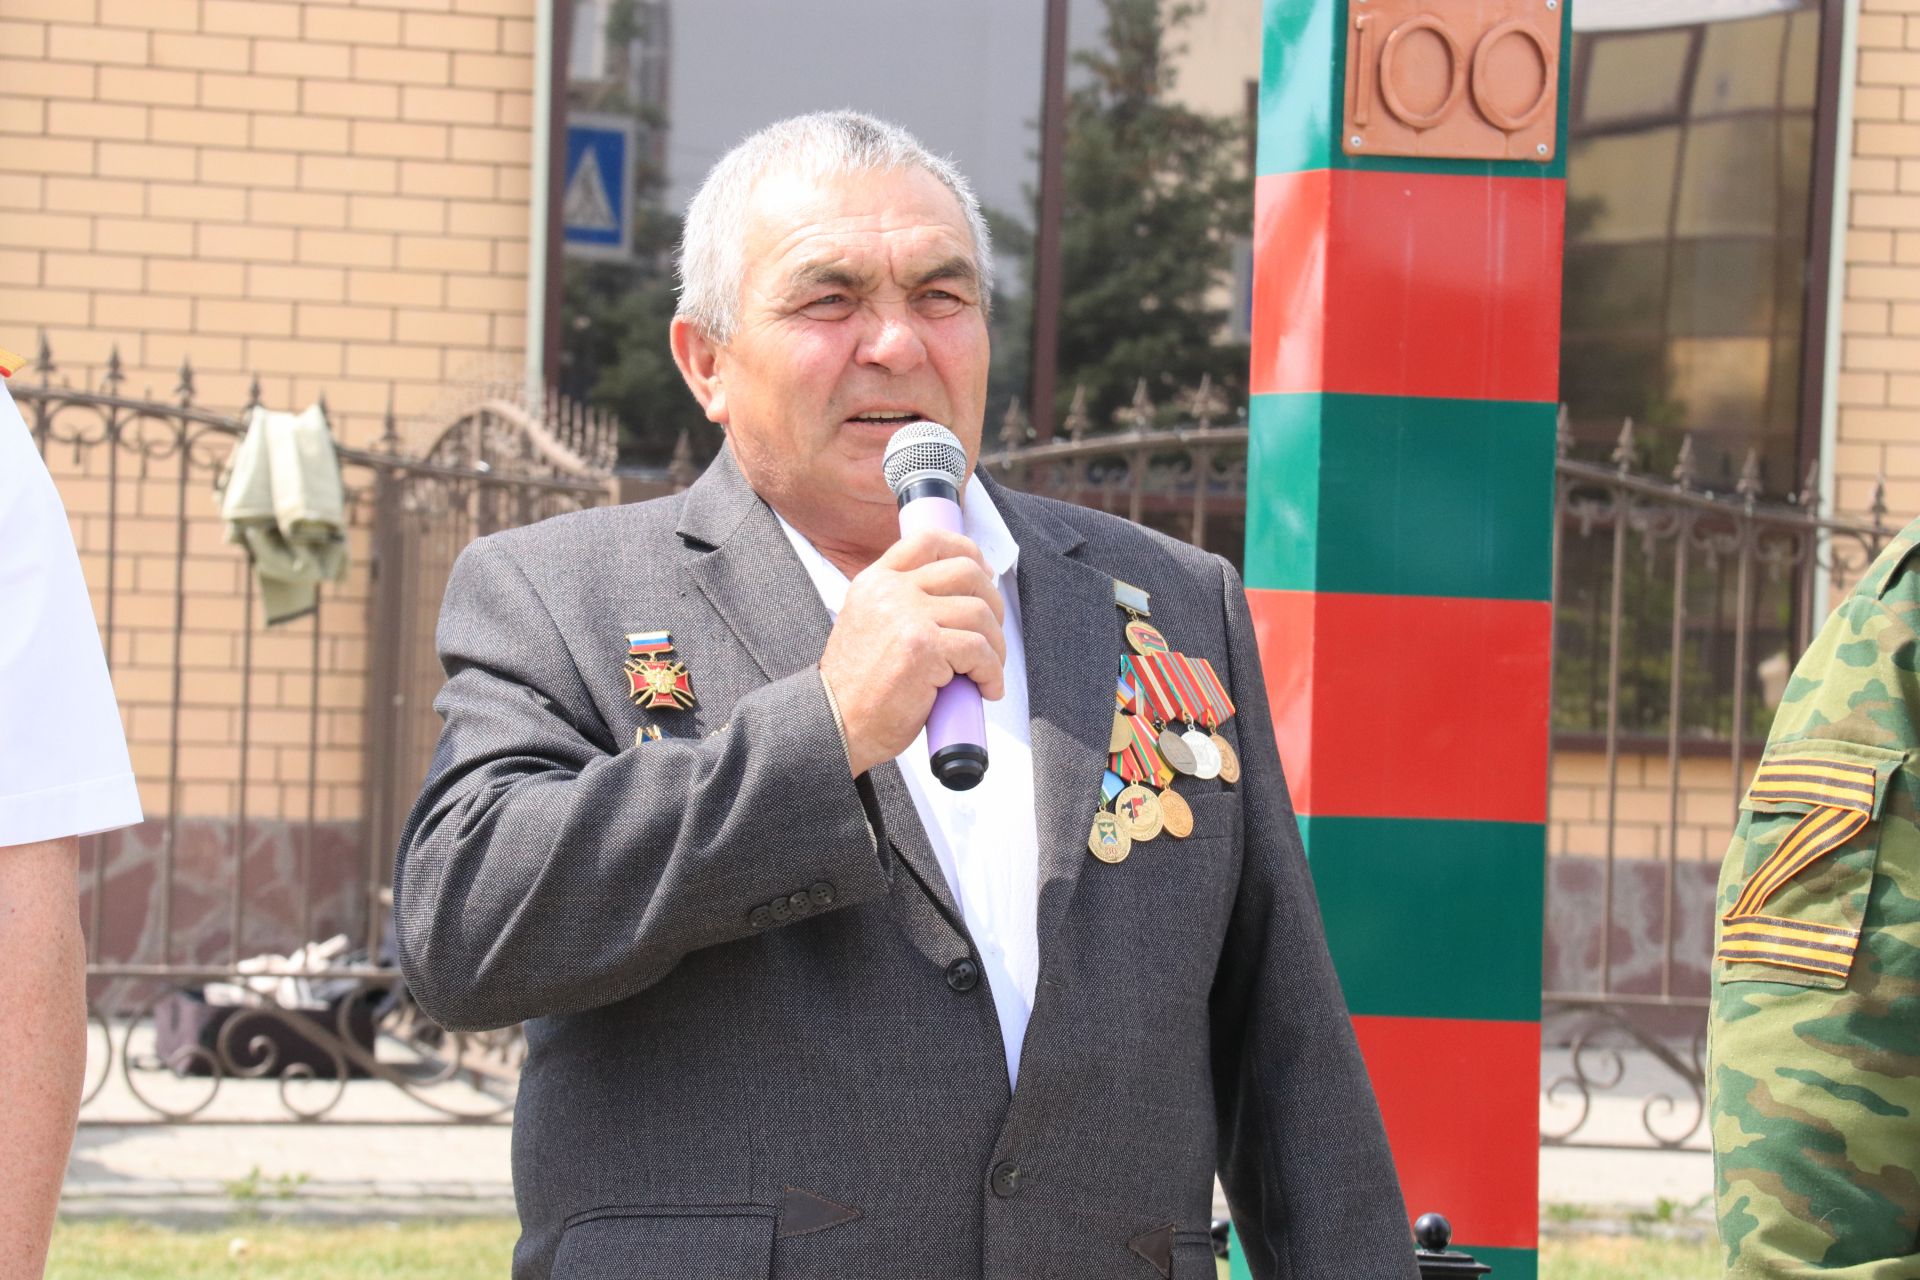 В Уруссу состоялся митинг, посвященный 105-ти летию пограничных войск